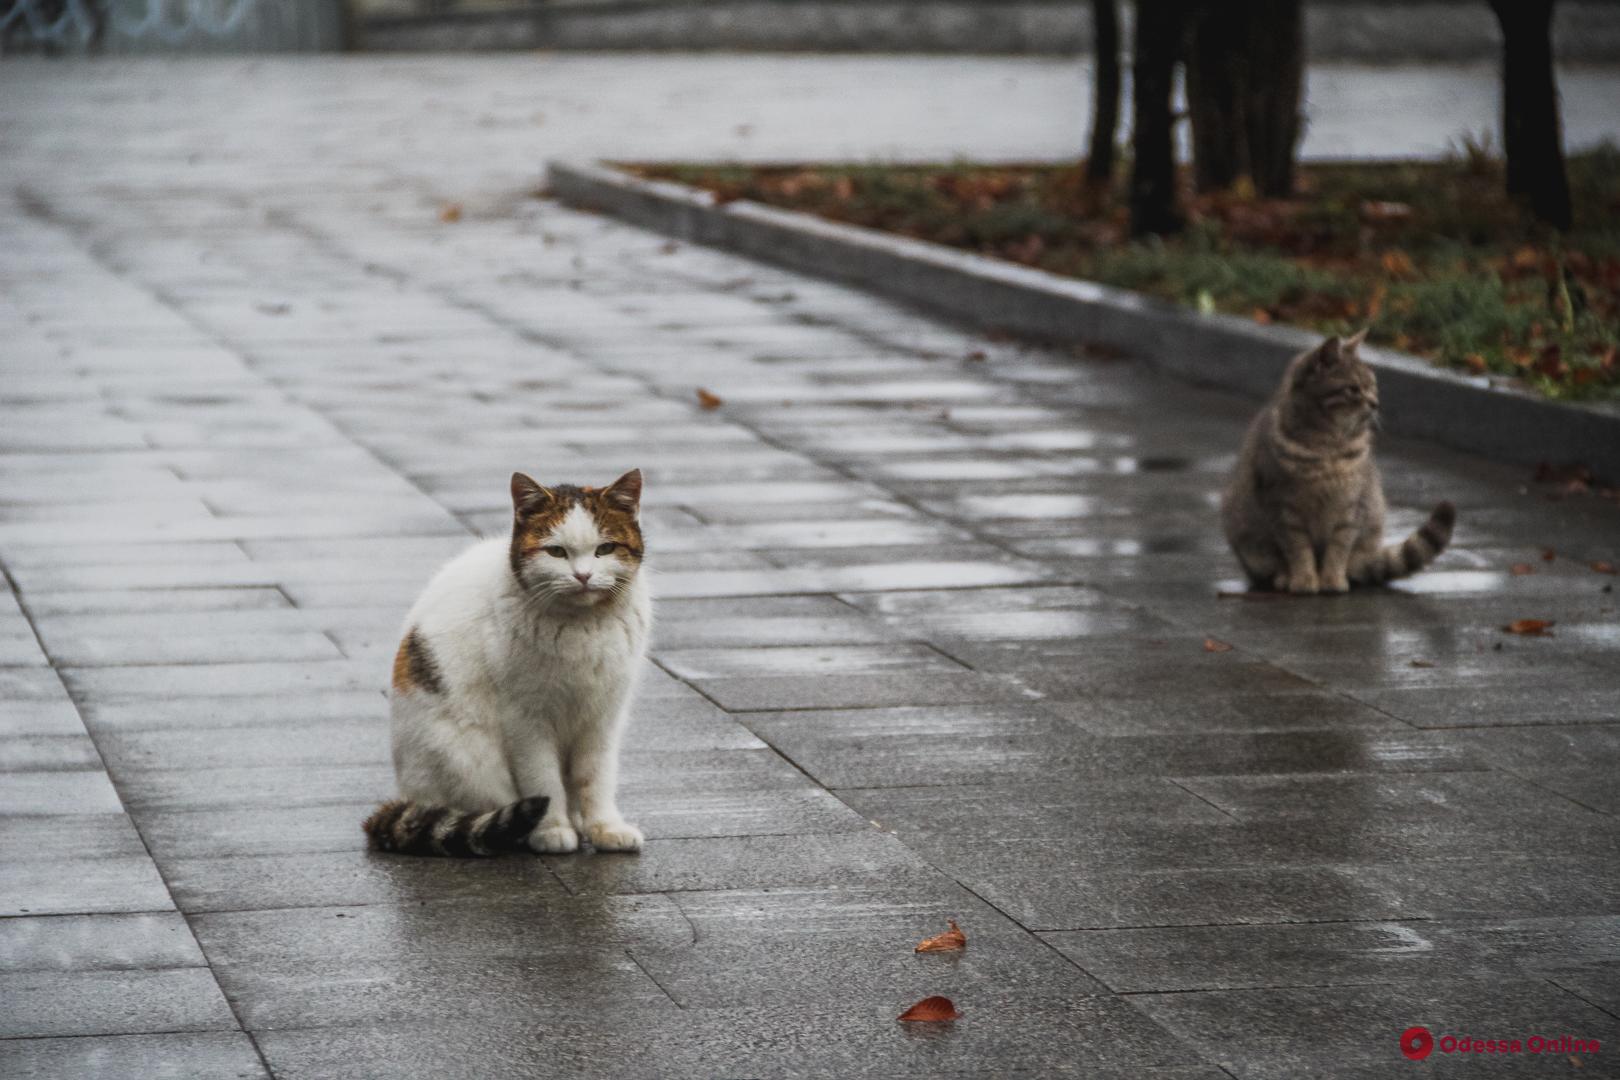 Декабрьские коты и туманный порт: фоторепортаж с бульвара Жванецкого